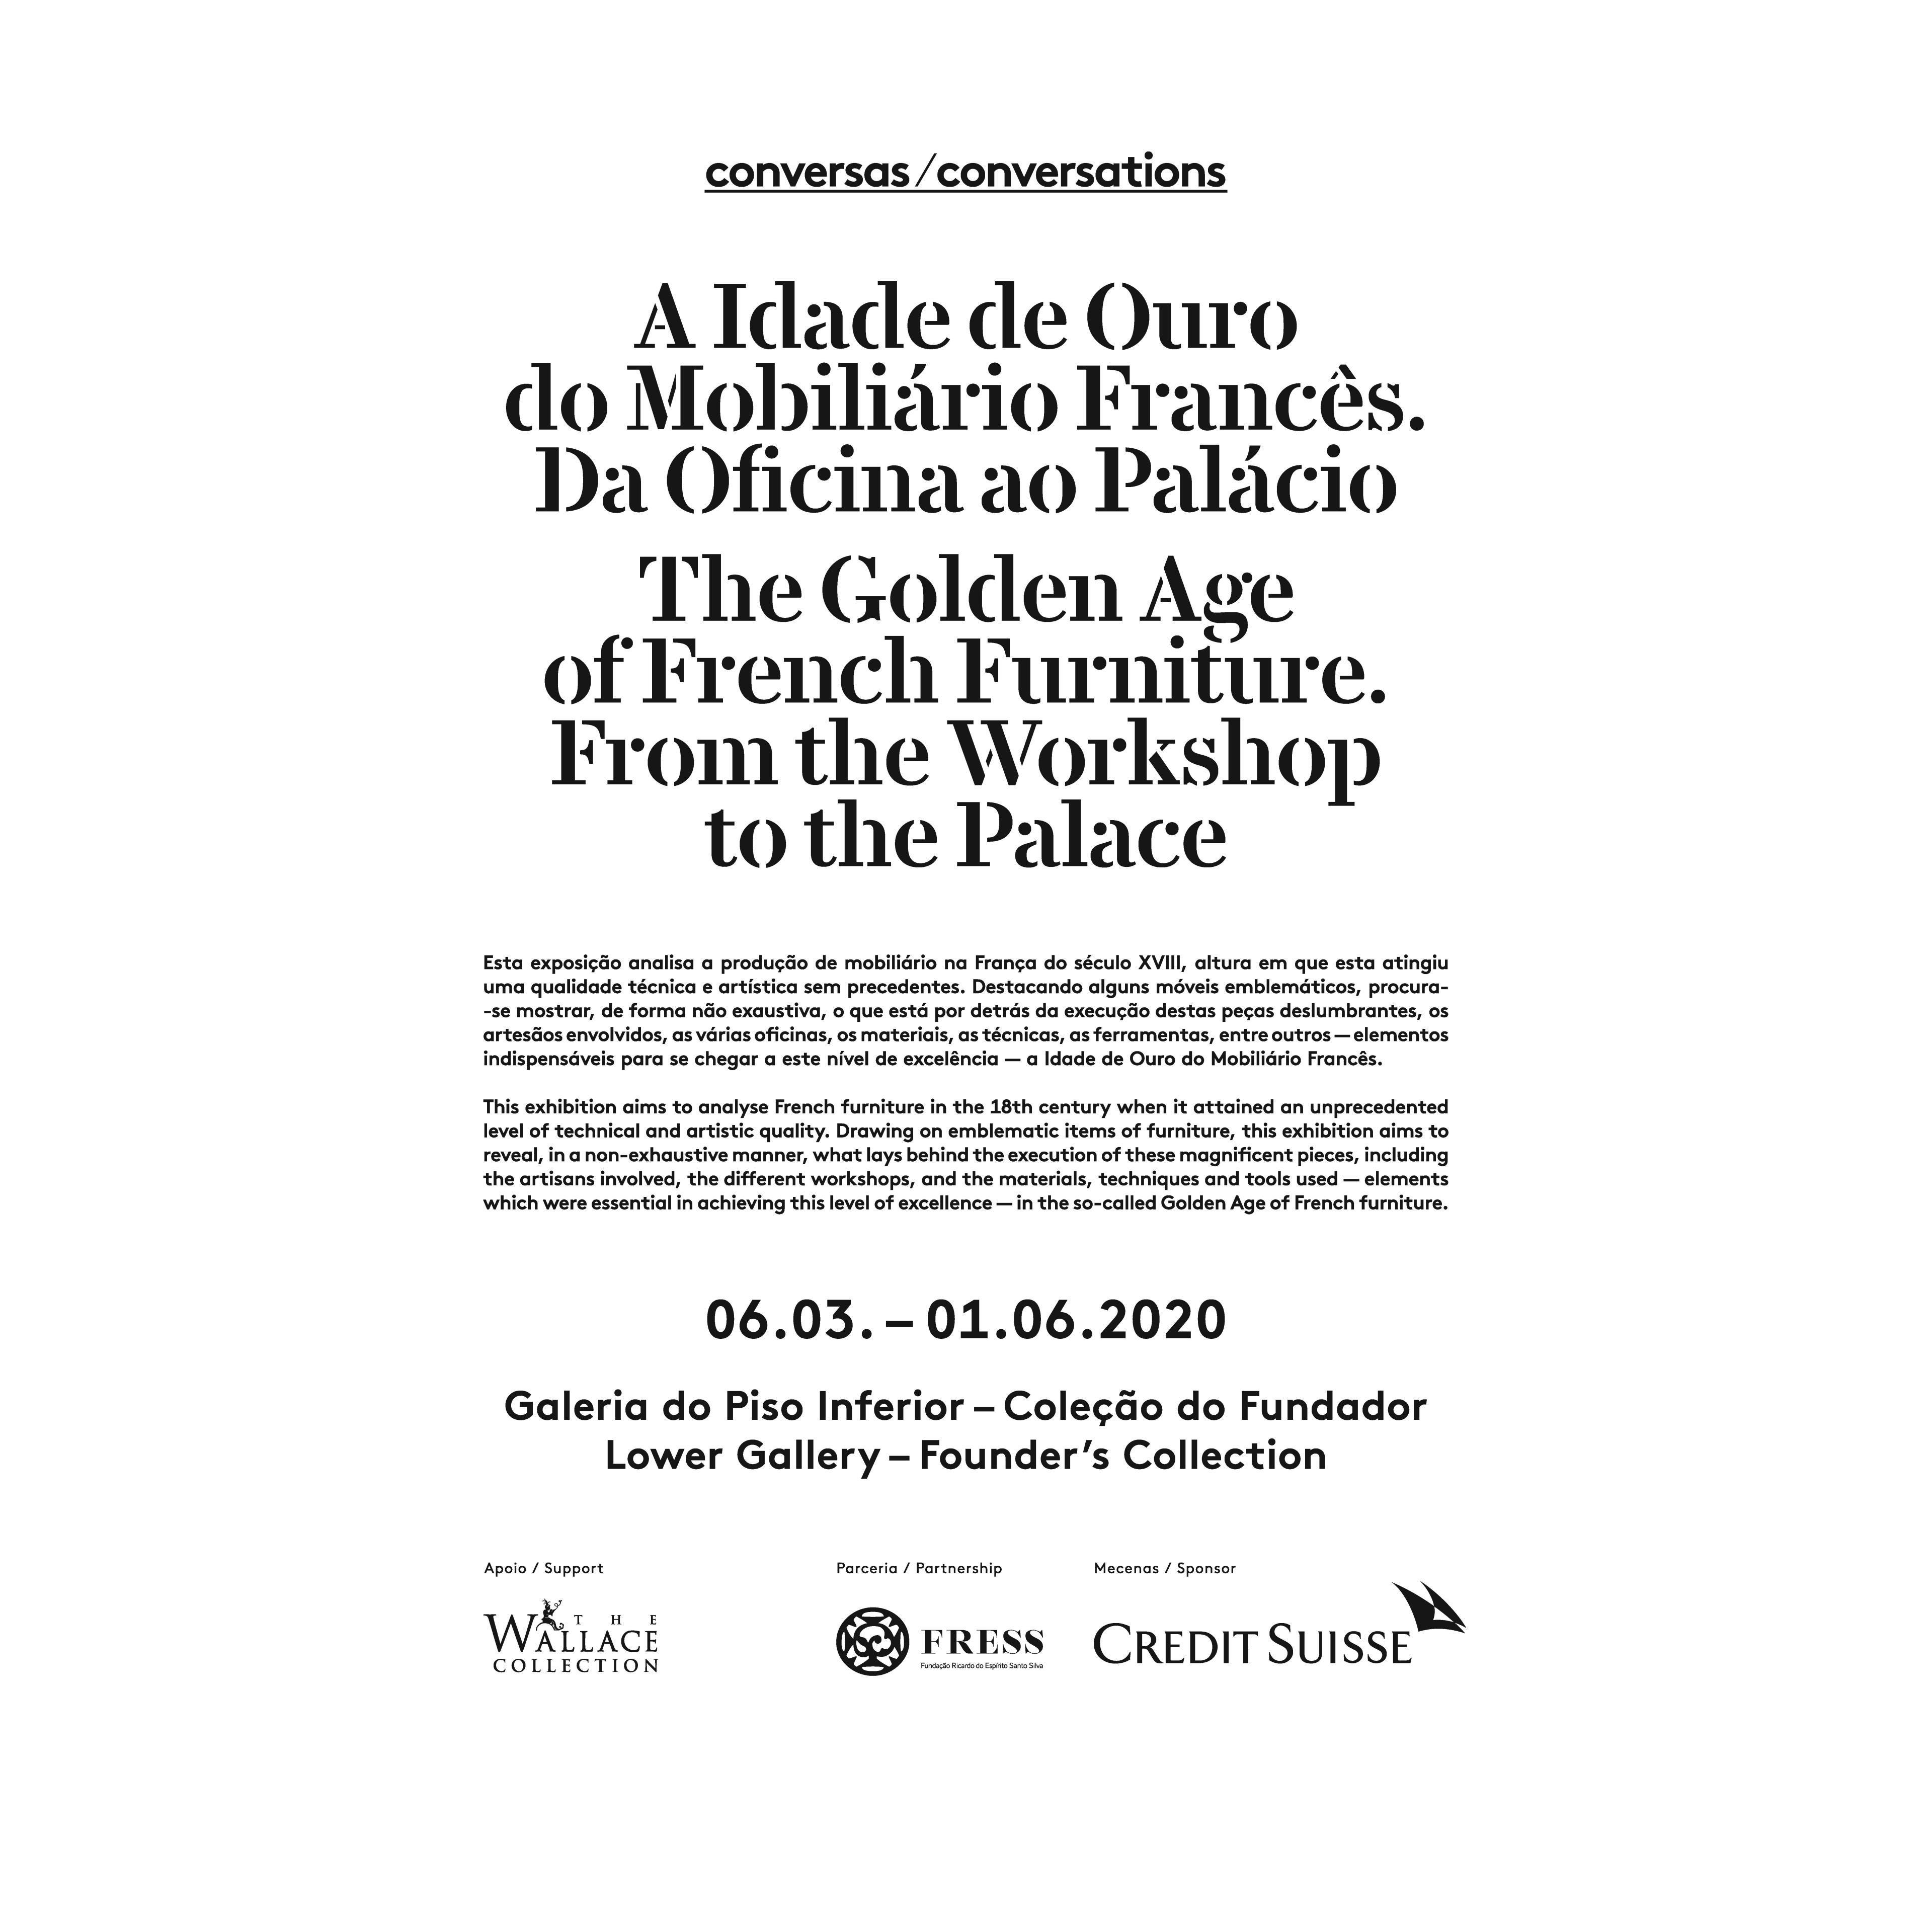 A Idade de Ouro do Mobiliário Francês. Da Oficina ao Palácio / The Golden Age of French Furniture. From the Workshop to the Palace